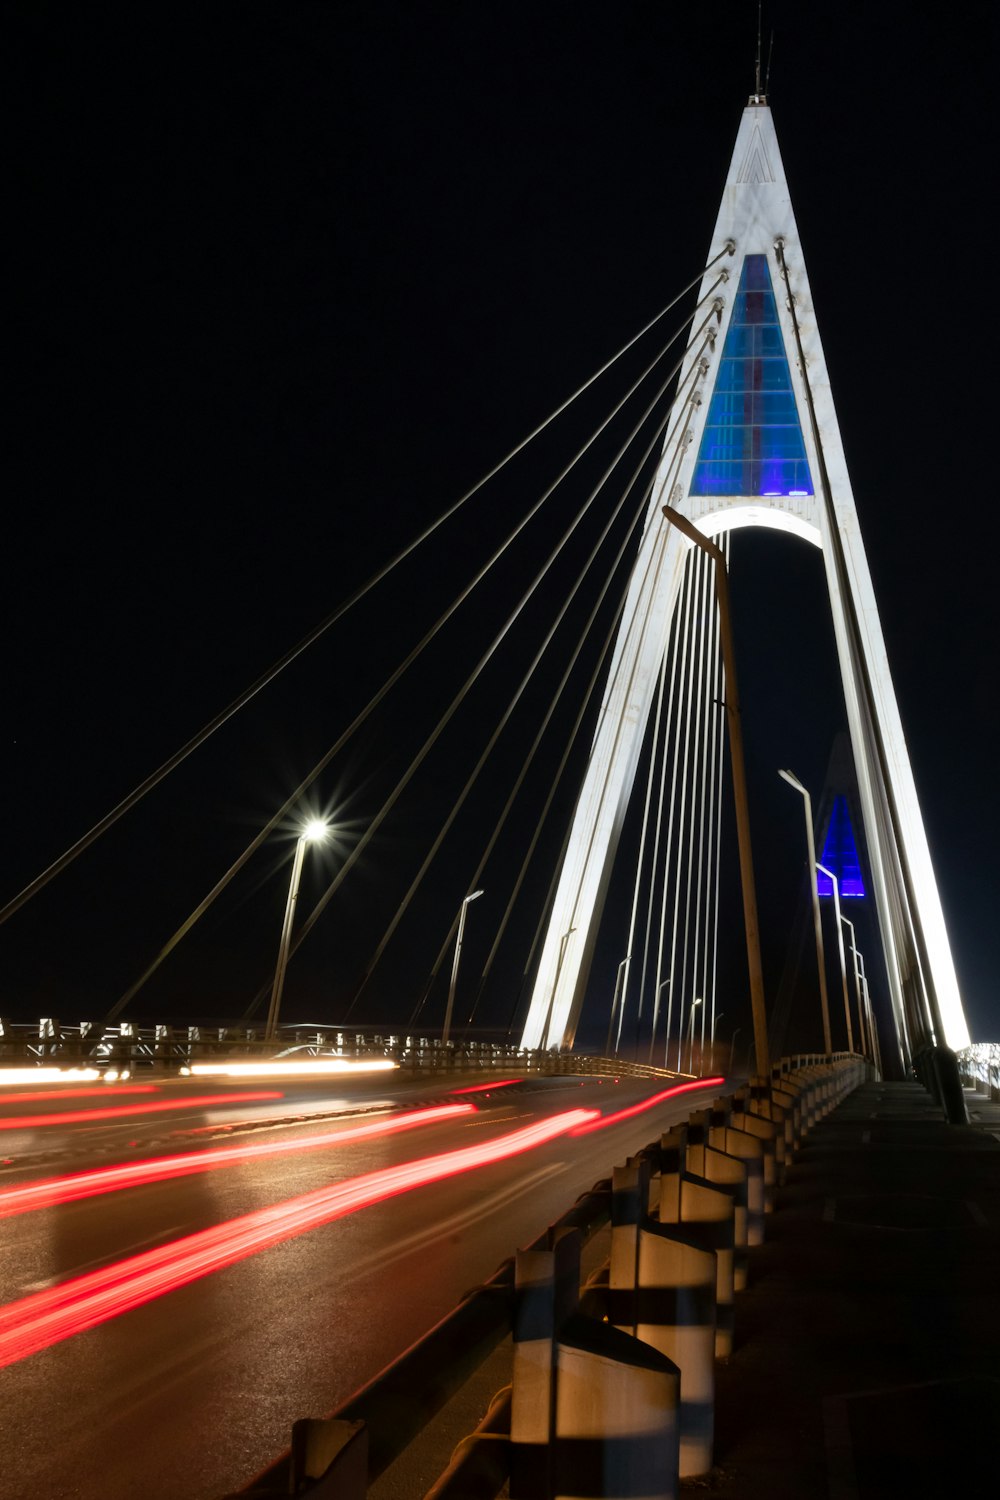 photographie en accéléré de voitures sur le pont pendant la nuit